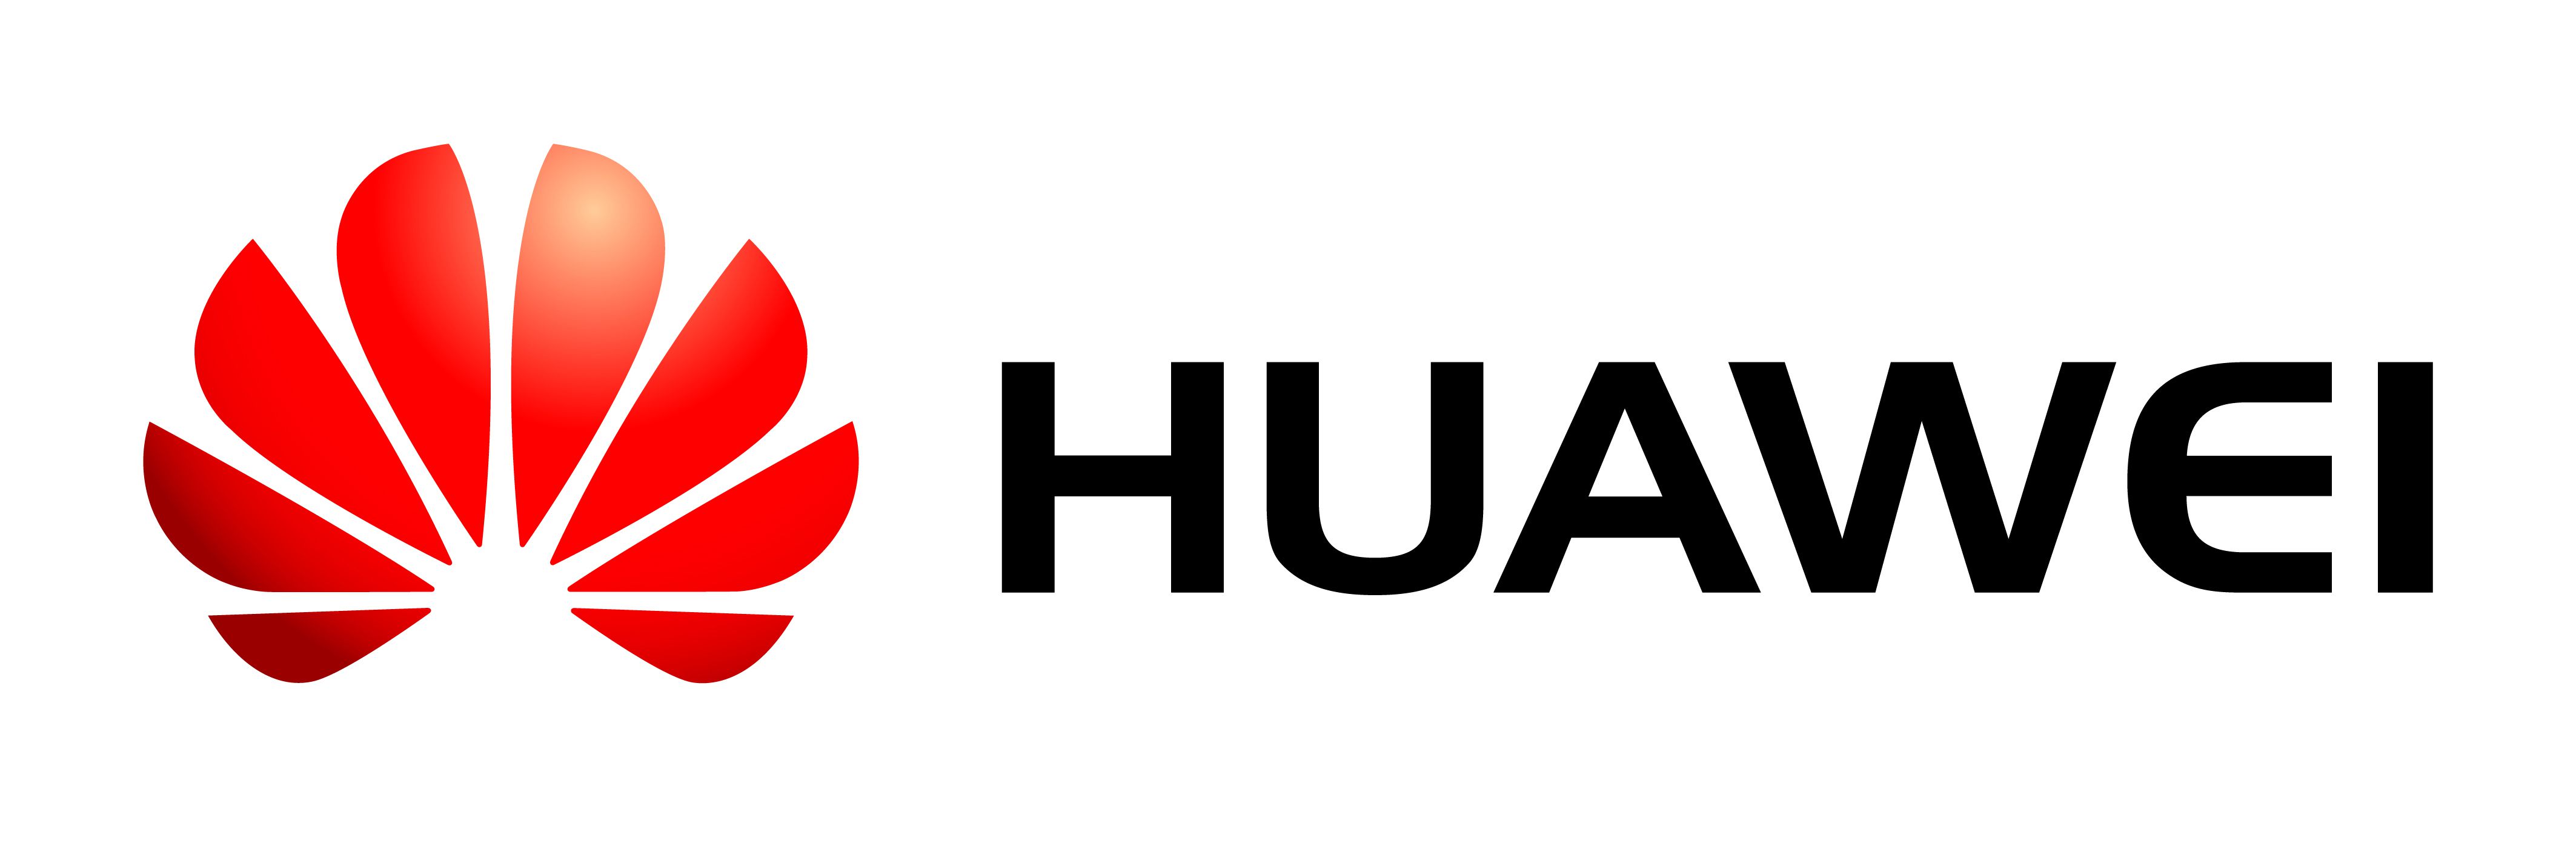 Reparatur Huawei